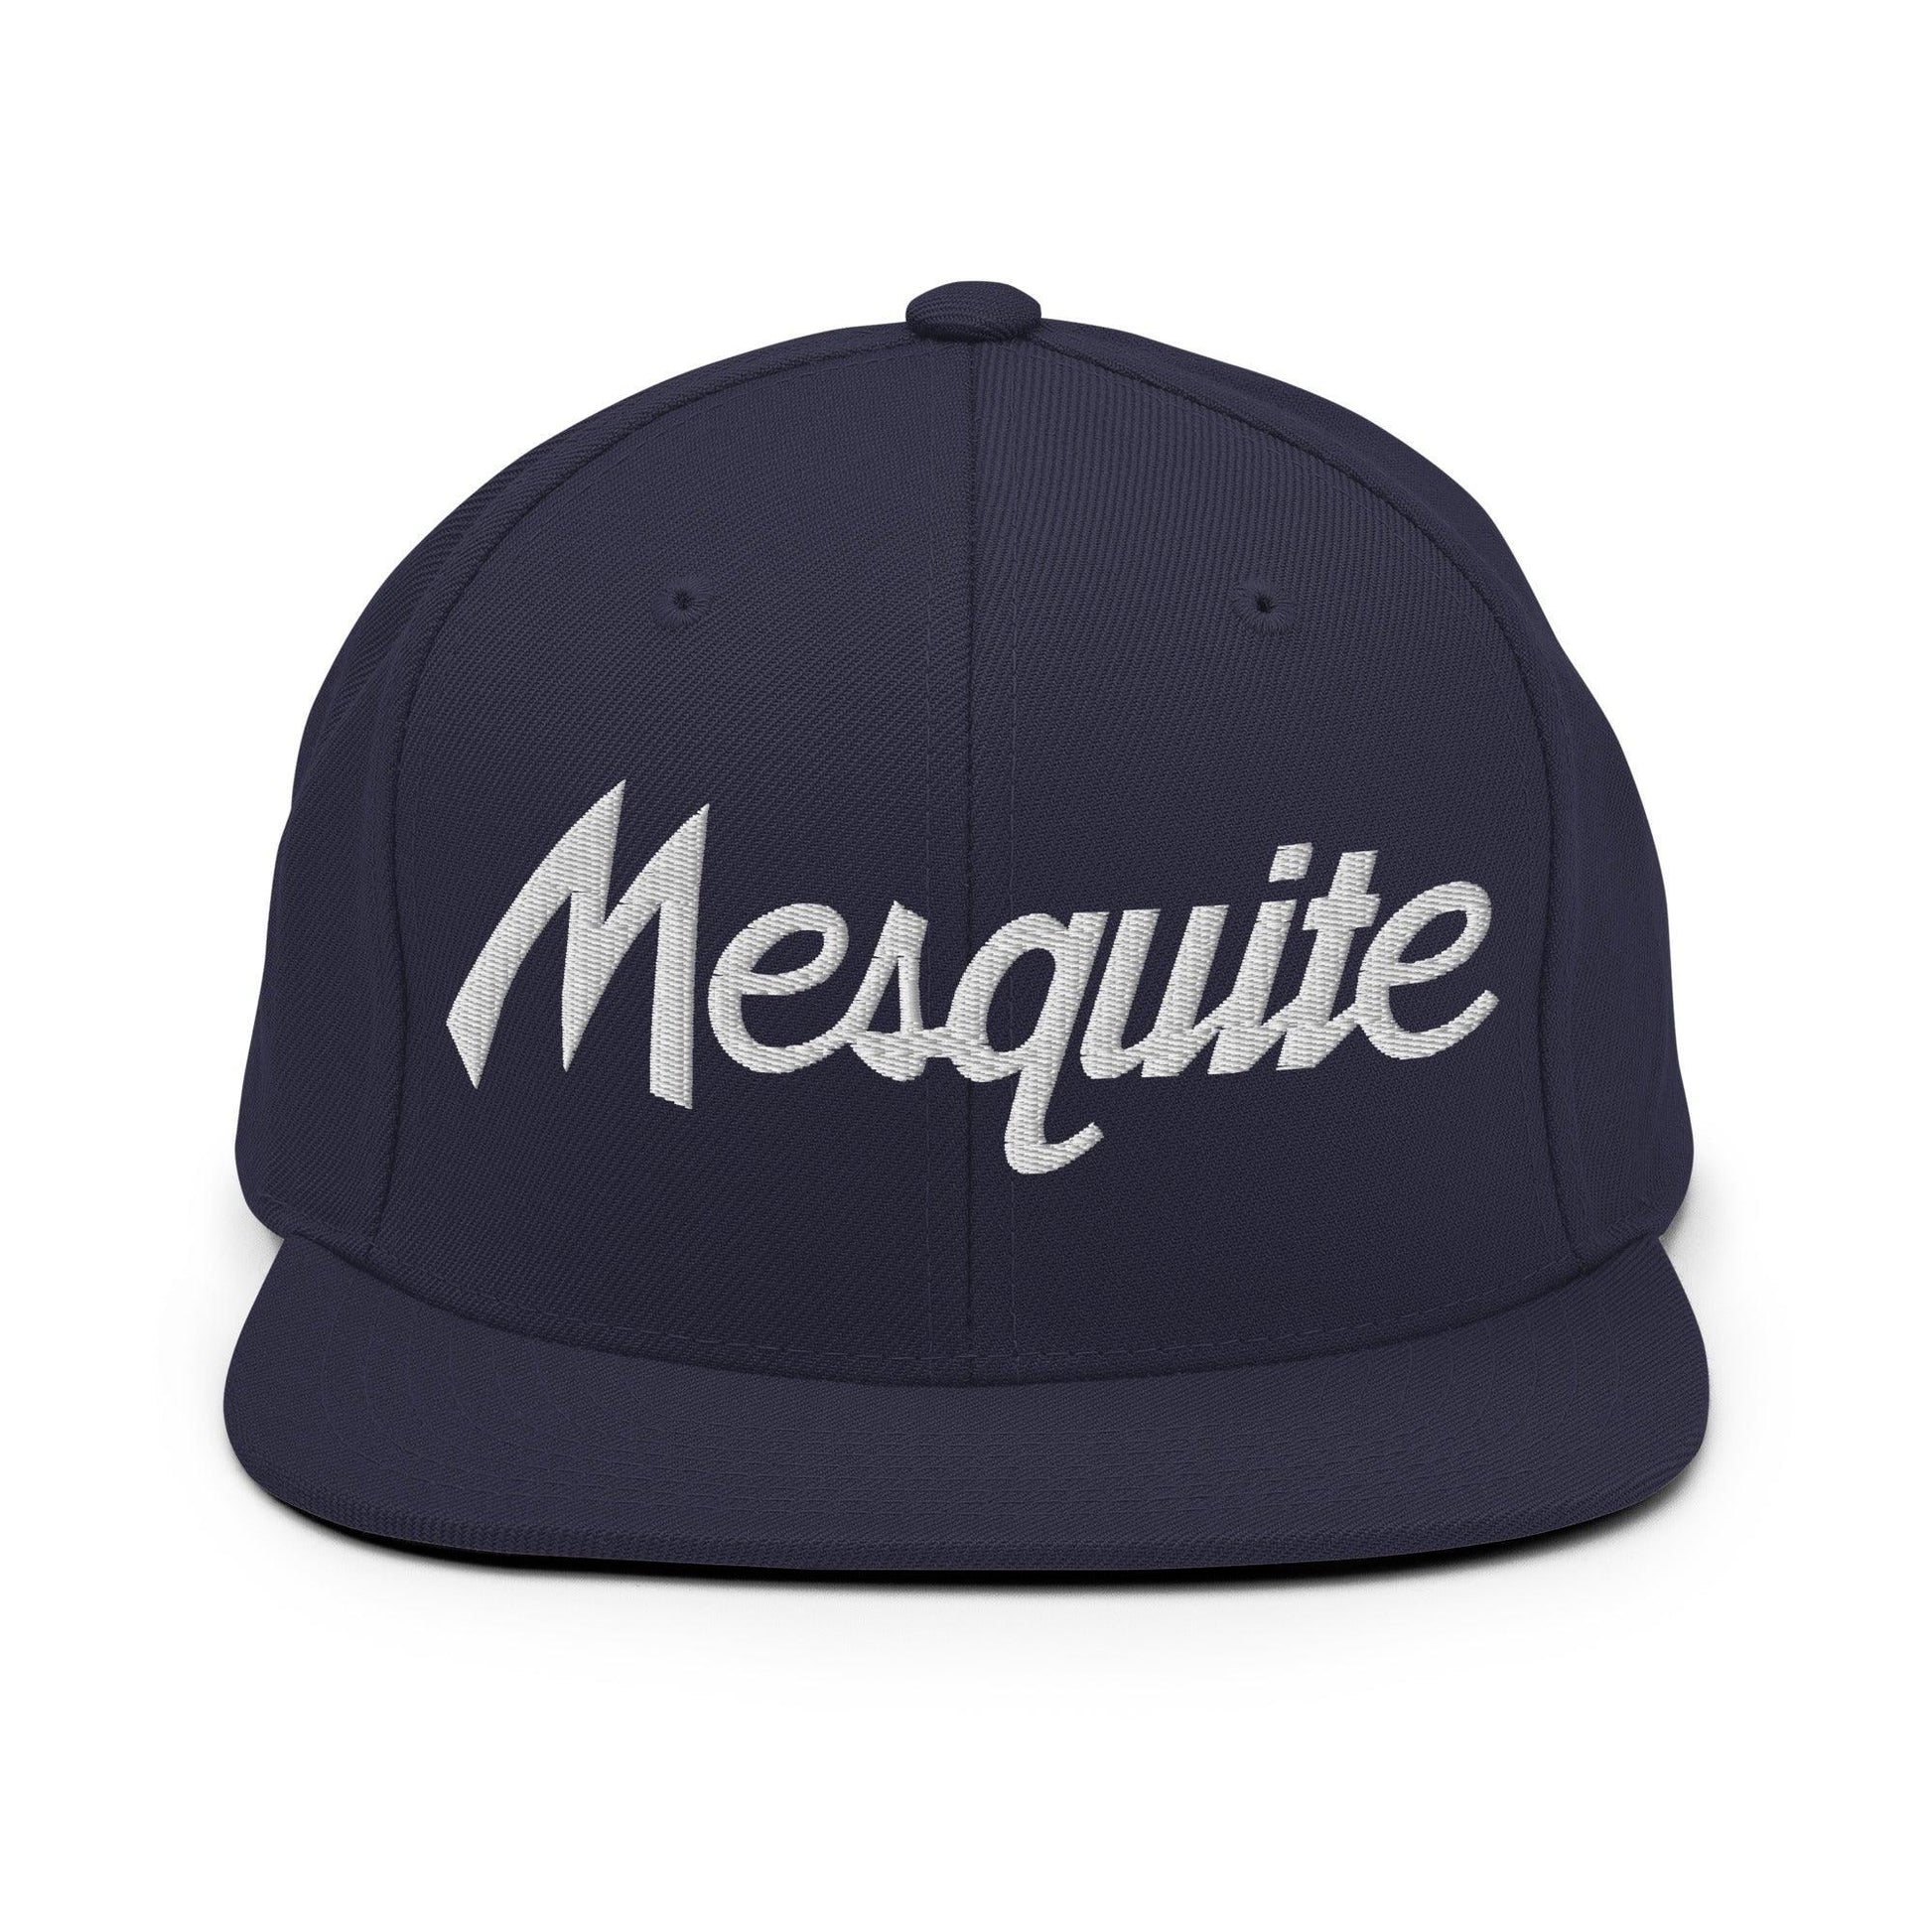 Mesquite Script Snapback Hat Navy